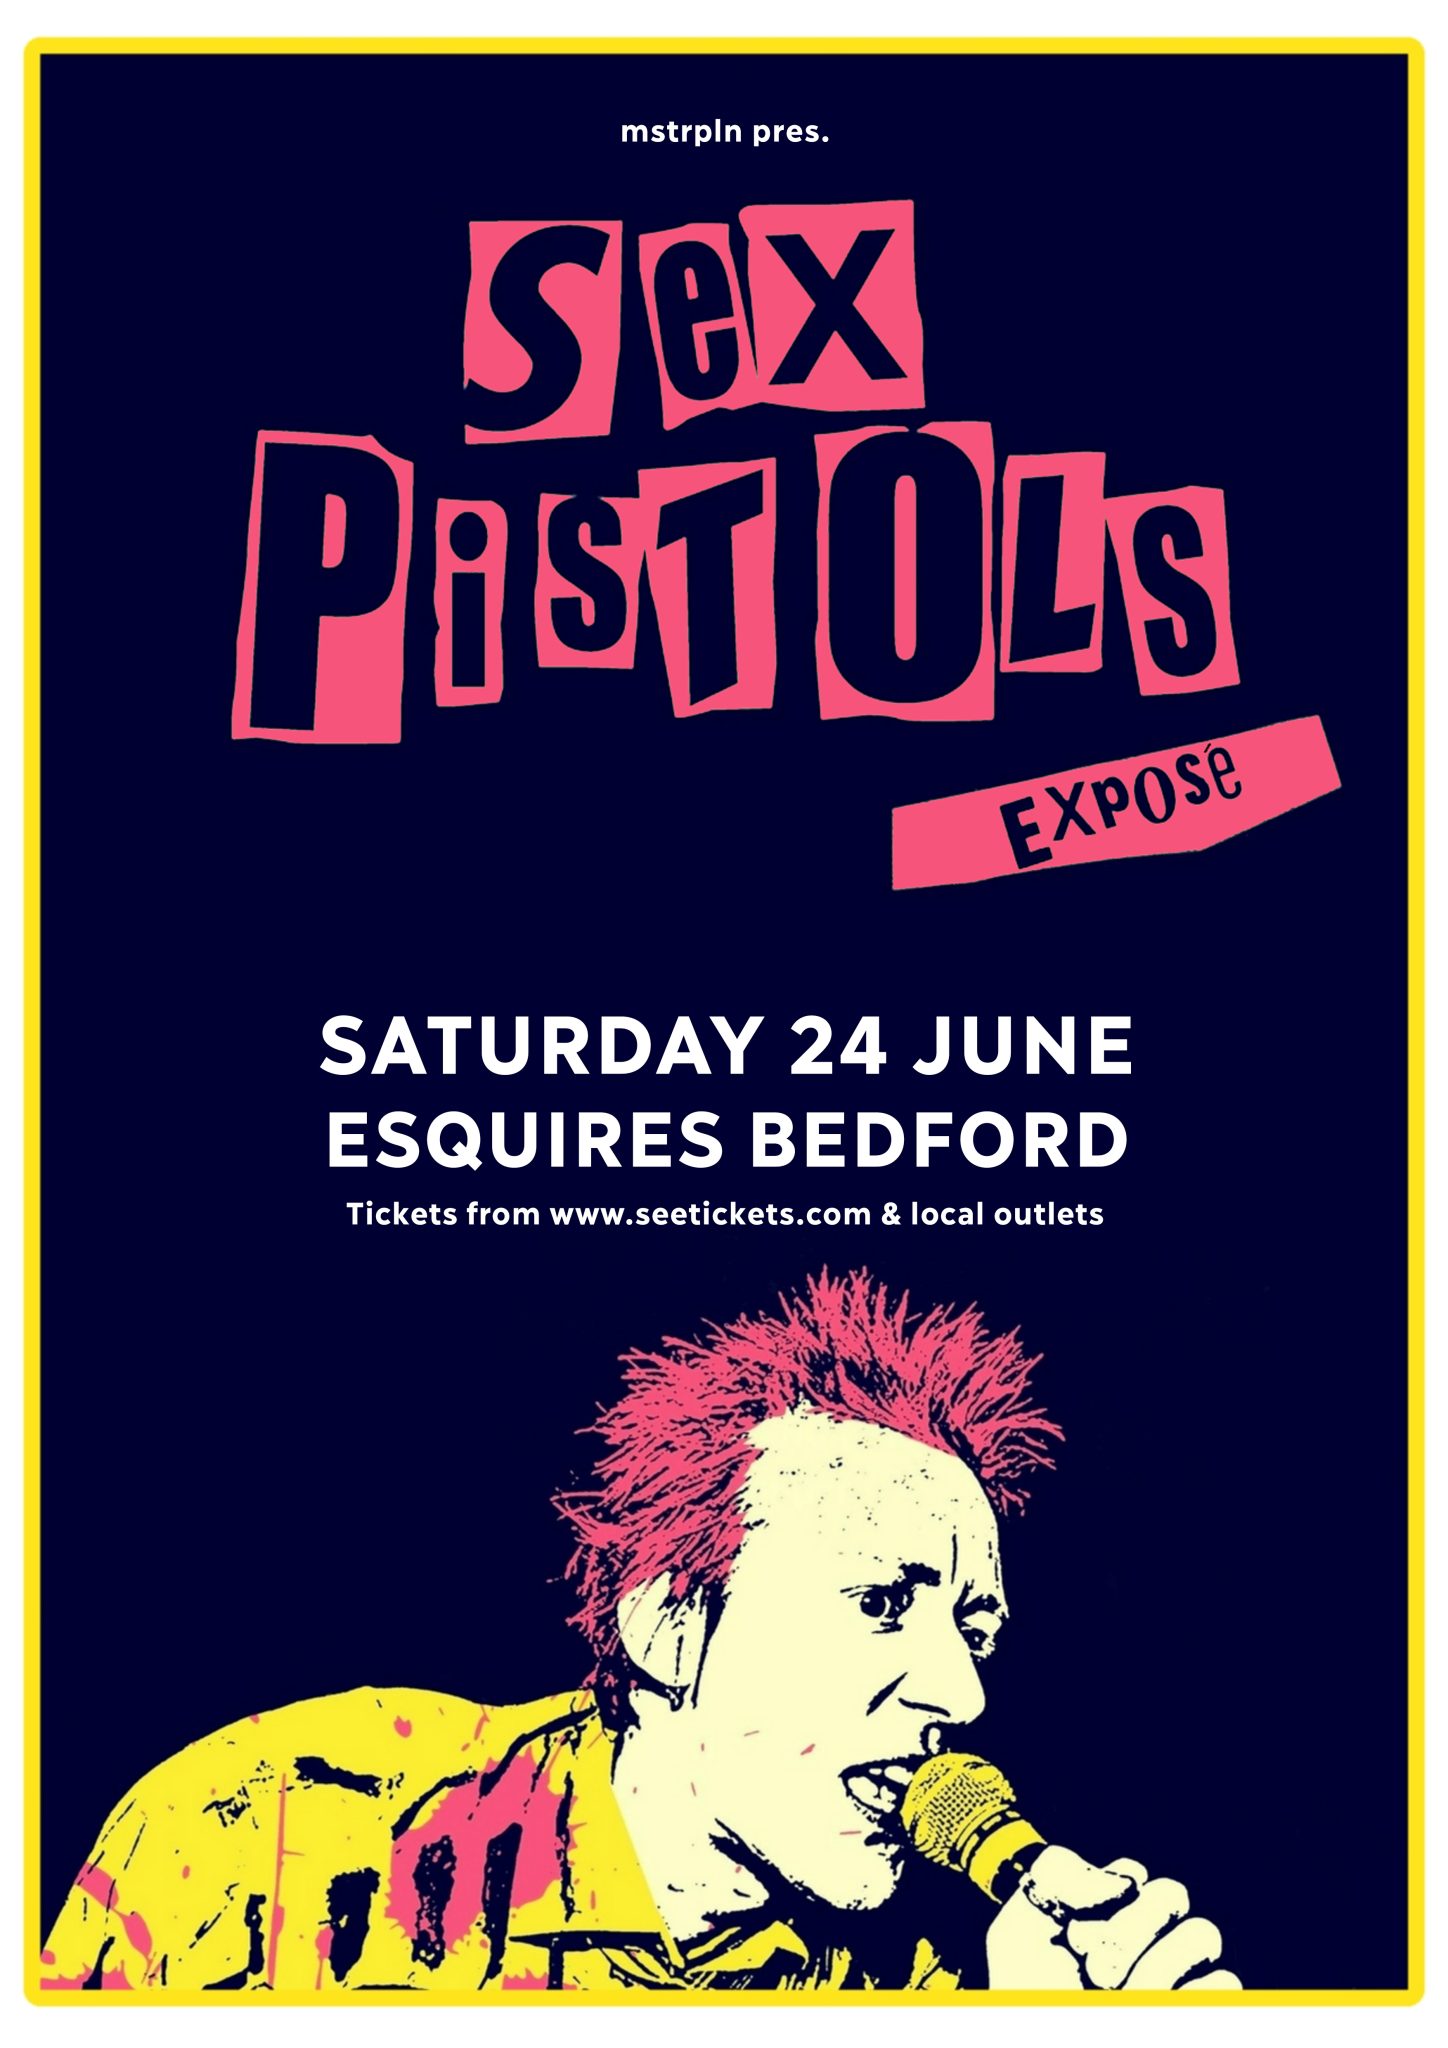 Sex Pistols Exposé Guests 7527